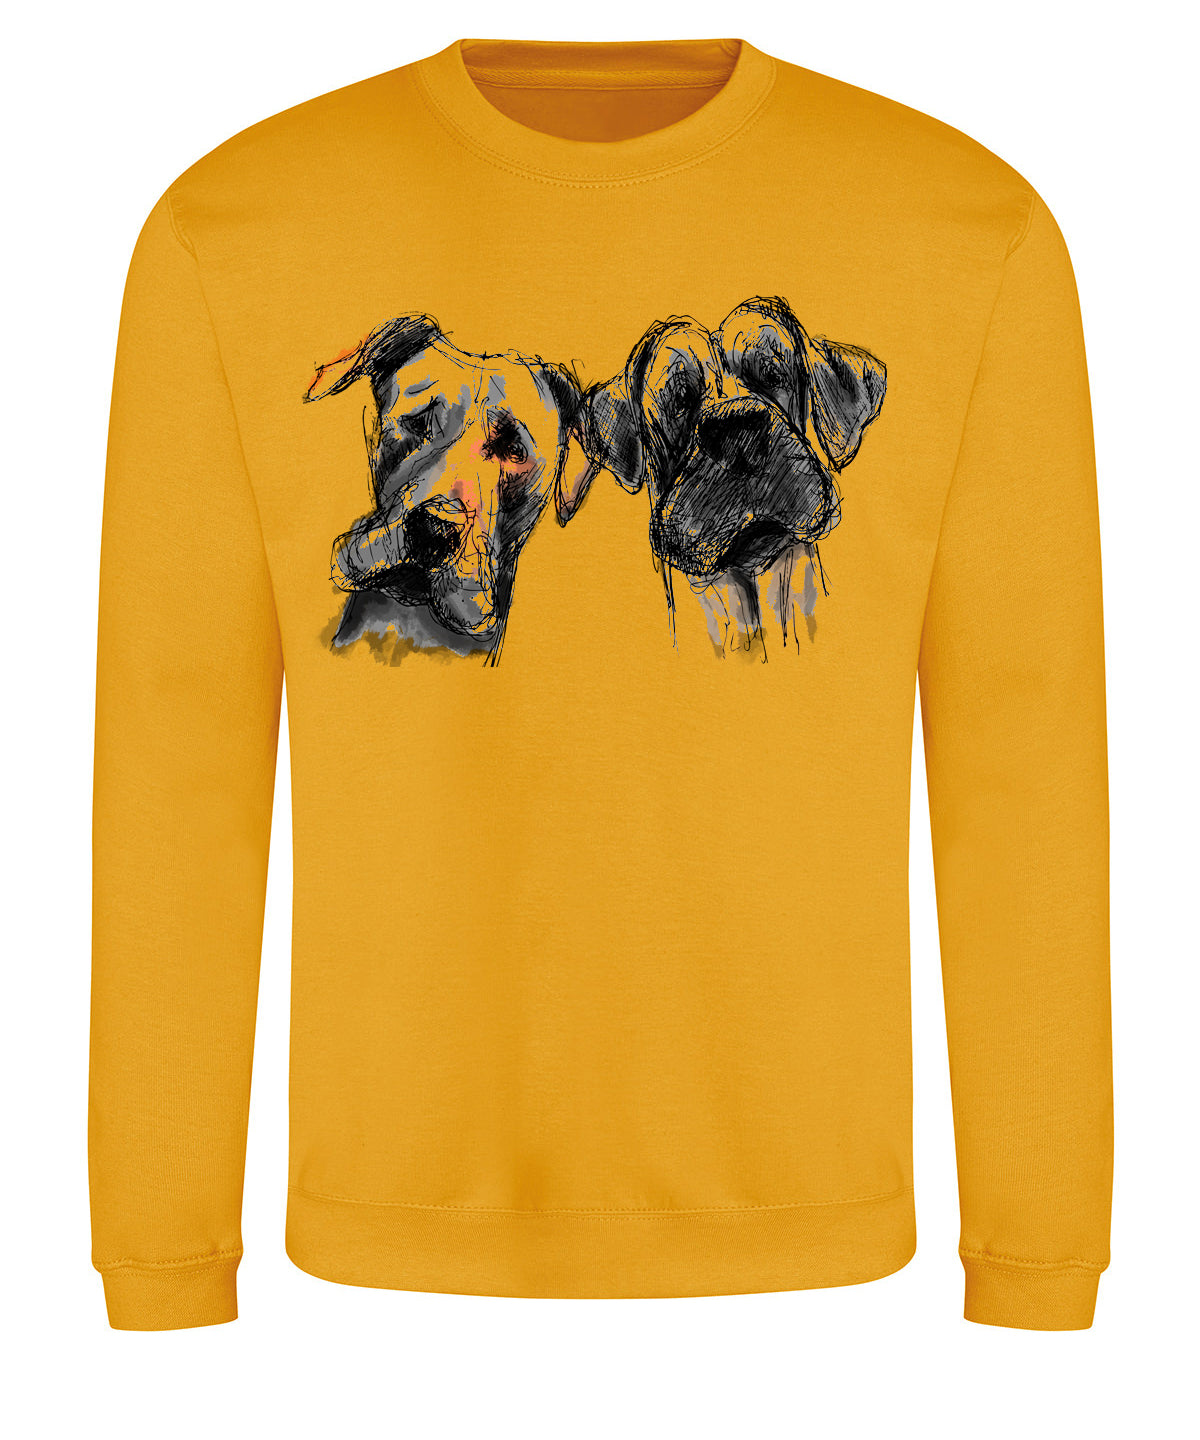 Two dogs unisex sweatshirt